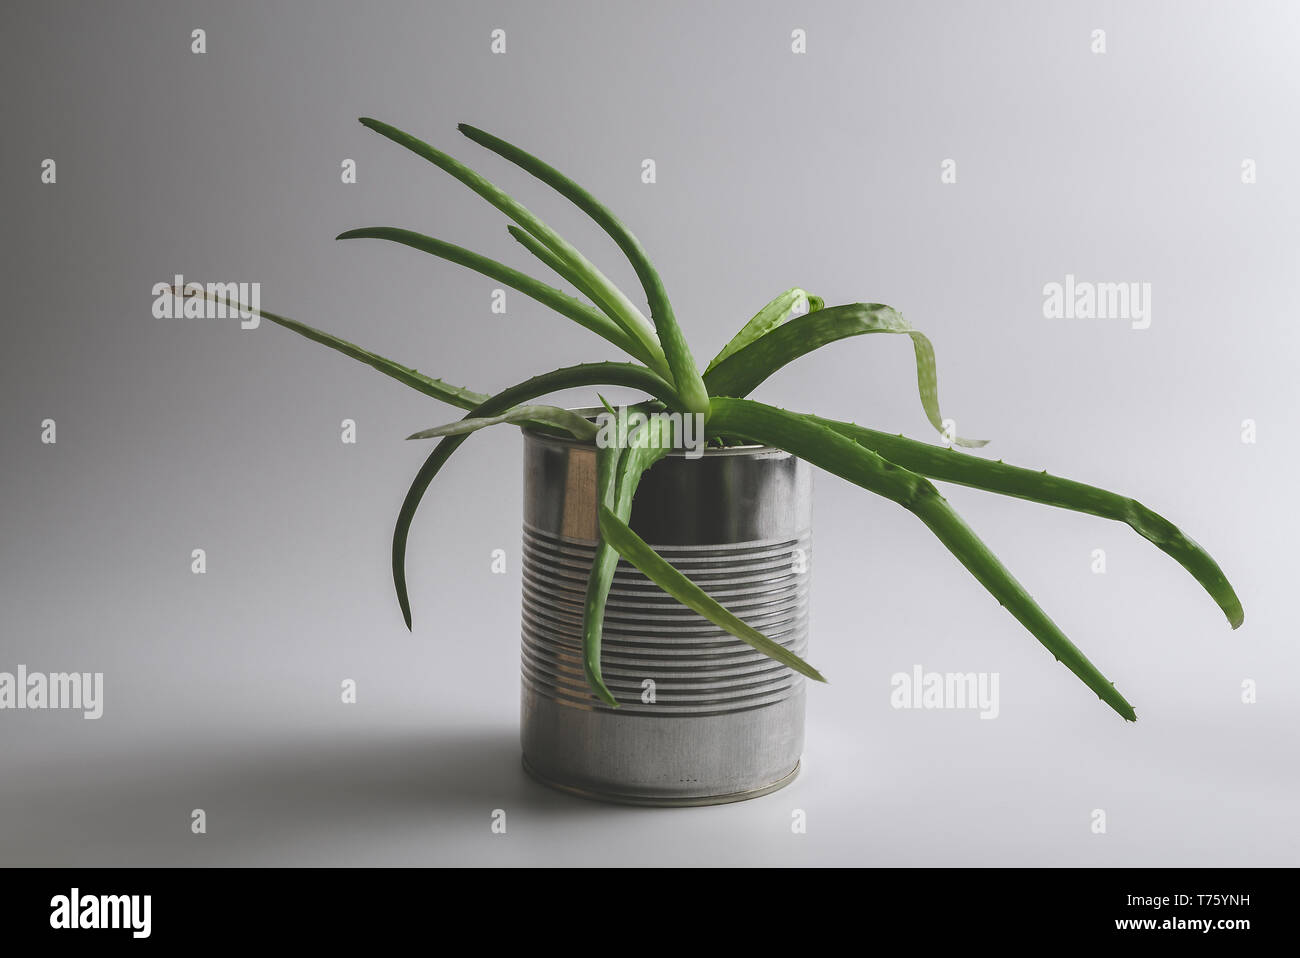 Einfache vintage grün Aloe vera sukkulente Pflanze in einem alternativen wiederverwendet Zinn hipster Blumentopf auf weißem Hintergrund. Stockfoto